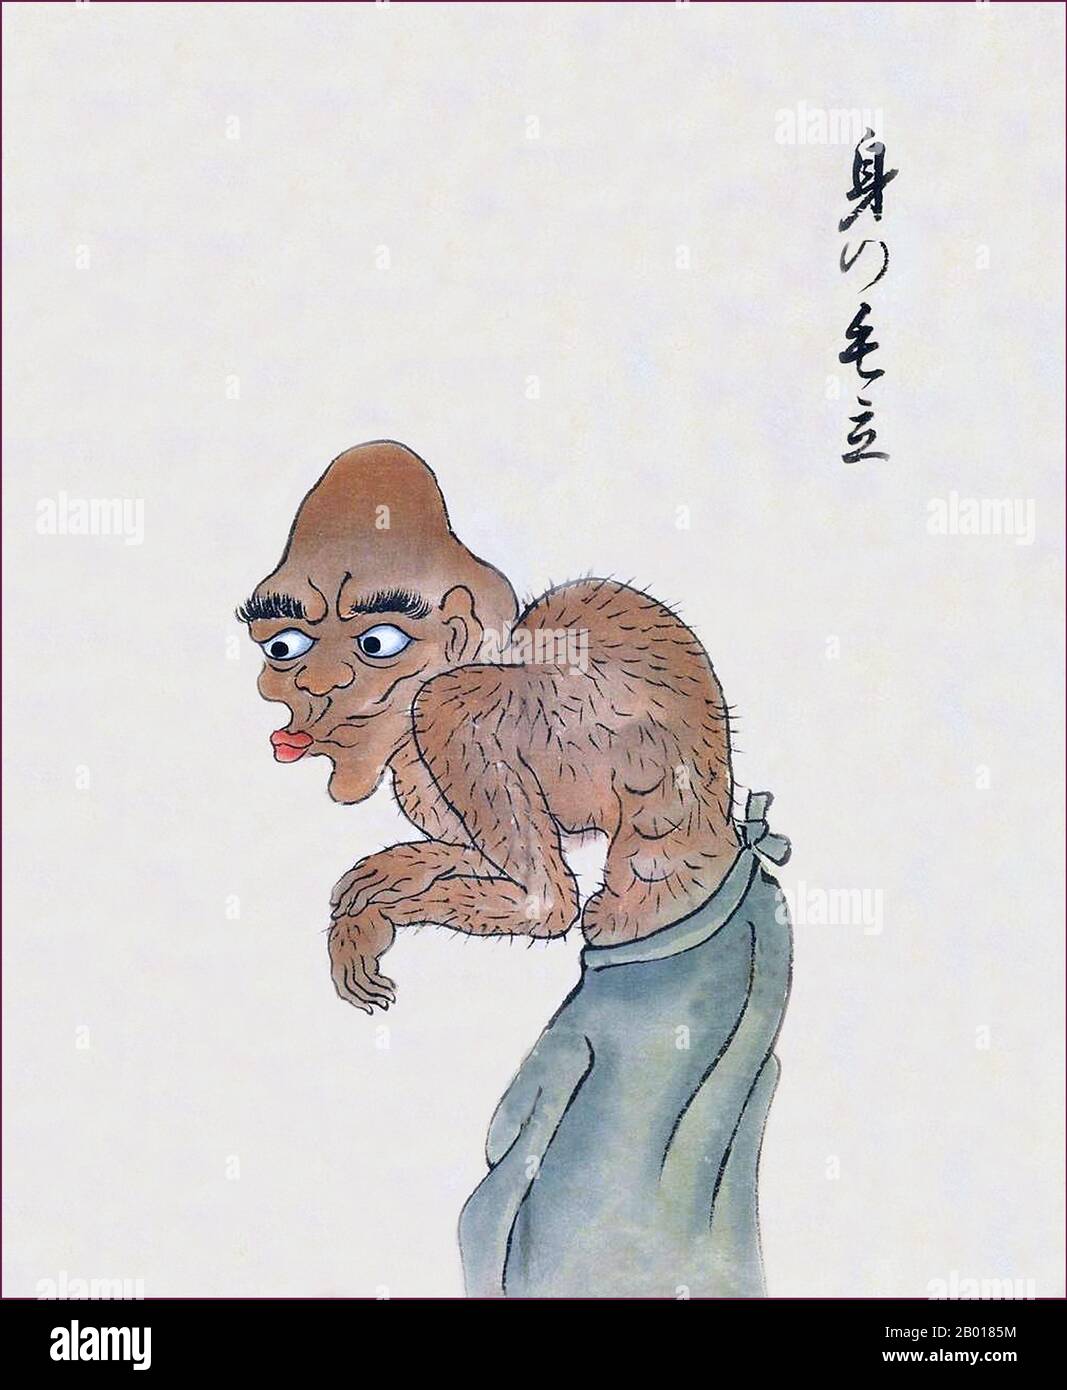 Japon: Le mi-no-kedachi a un manteau de cheveux de corps qui se tient sur la fin de la Bakemono Zukushi Monster Scroll, période Edo (1603-1868), 18th-19th siècle.Le bakemono Zukushi Handscroll, peint dans la période Edo (18th-19th siècle) par un artiste inconnu, dépeint 24 monstres traditionnels qui hantent traditionnellement des gens et des localités au Japon. Banque D'Images